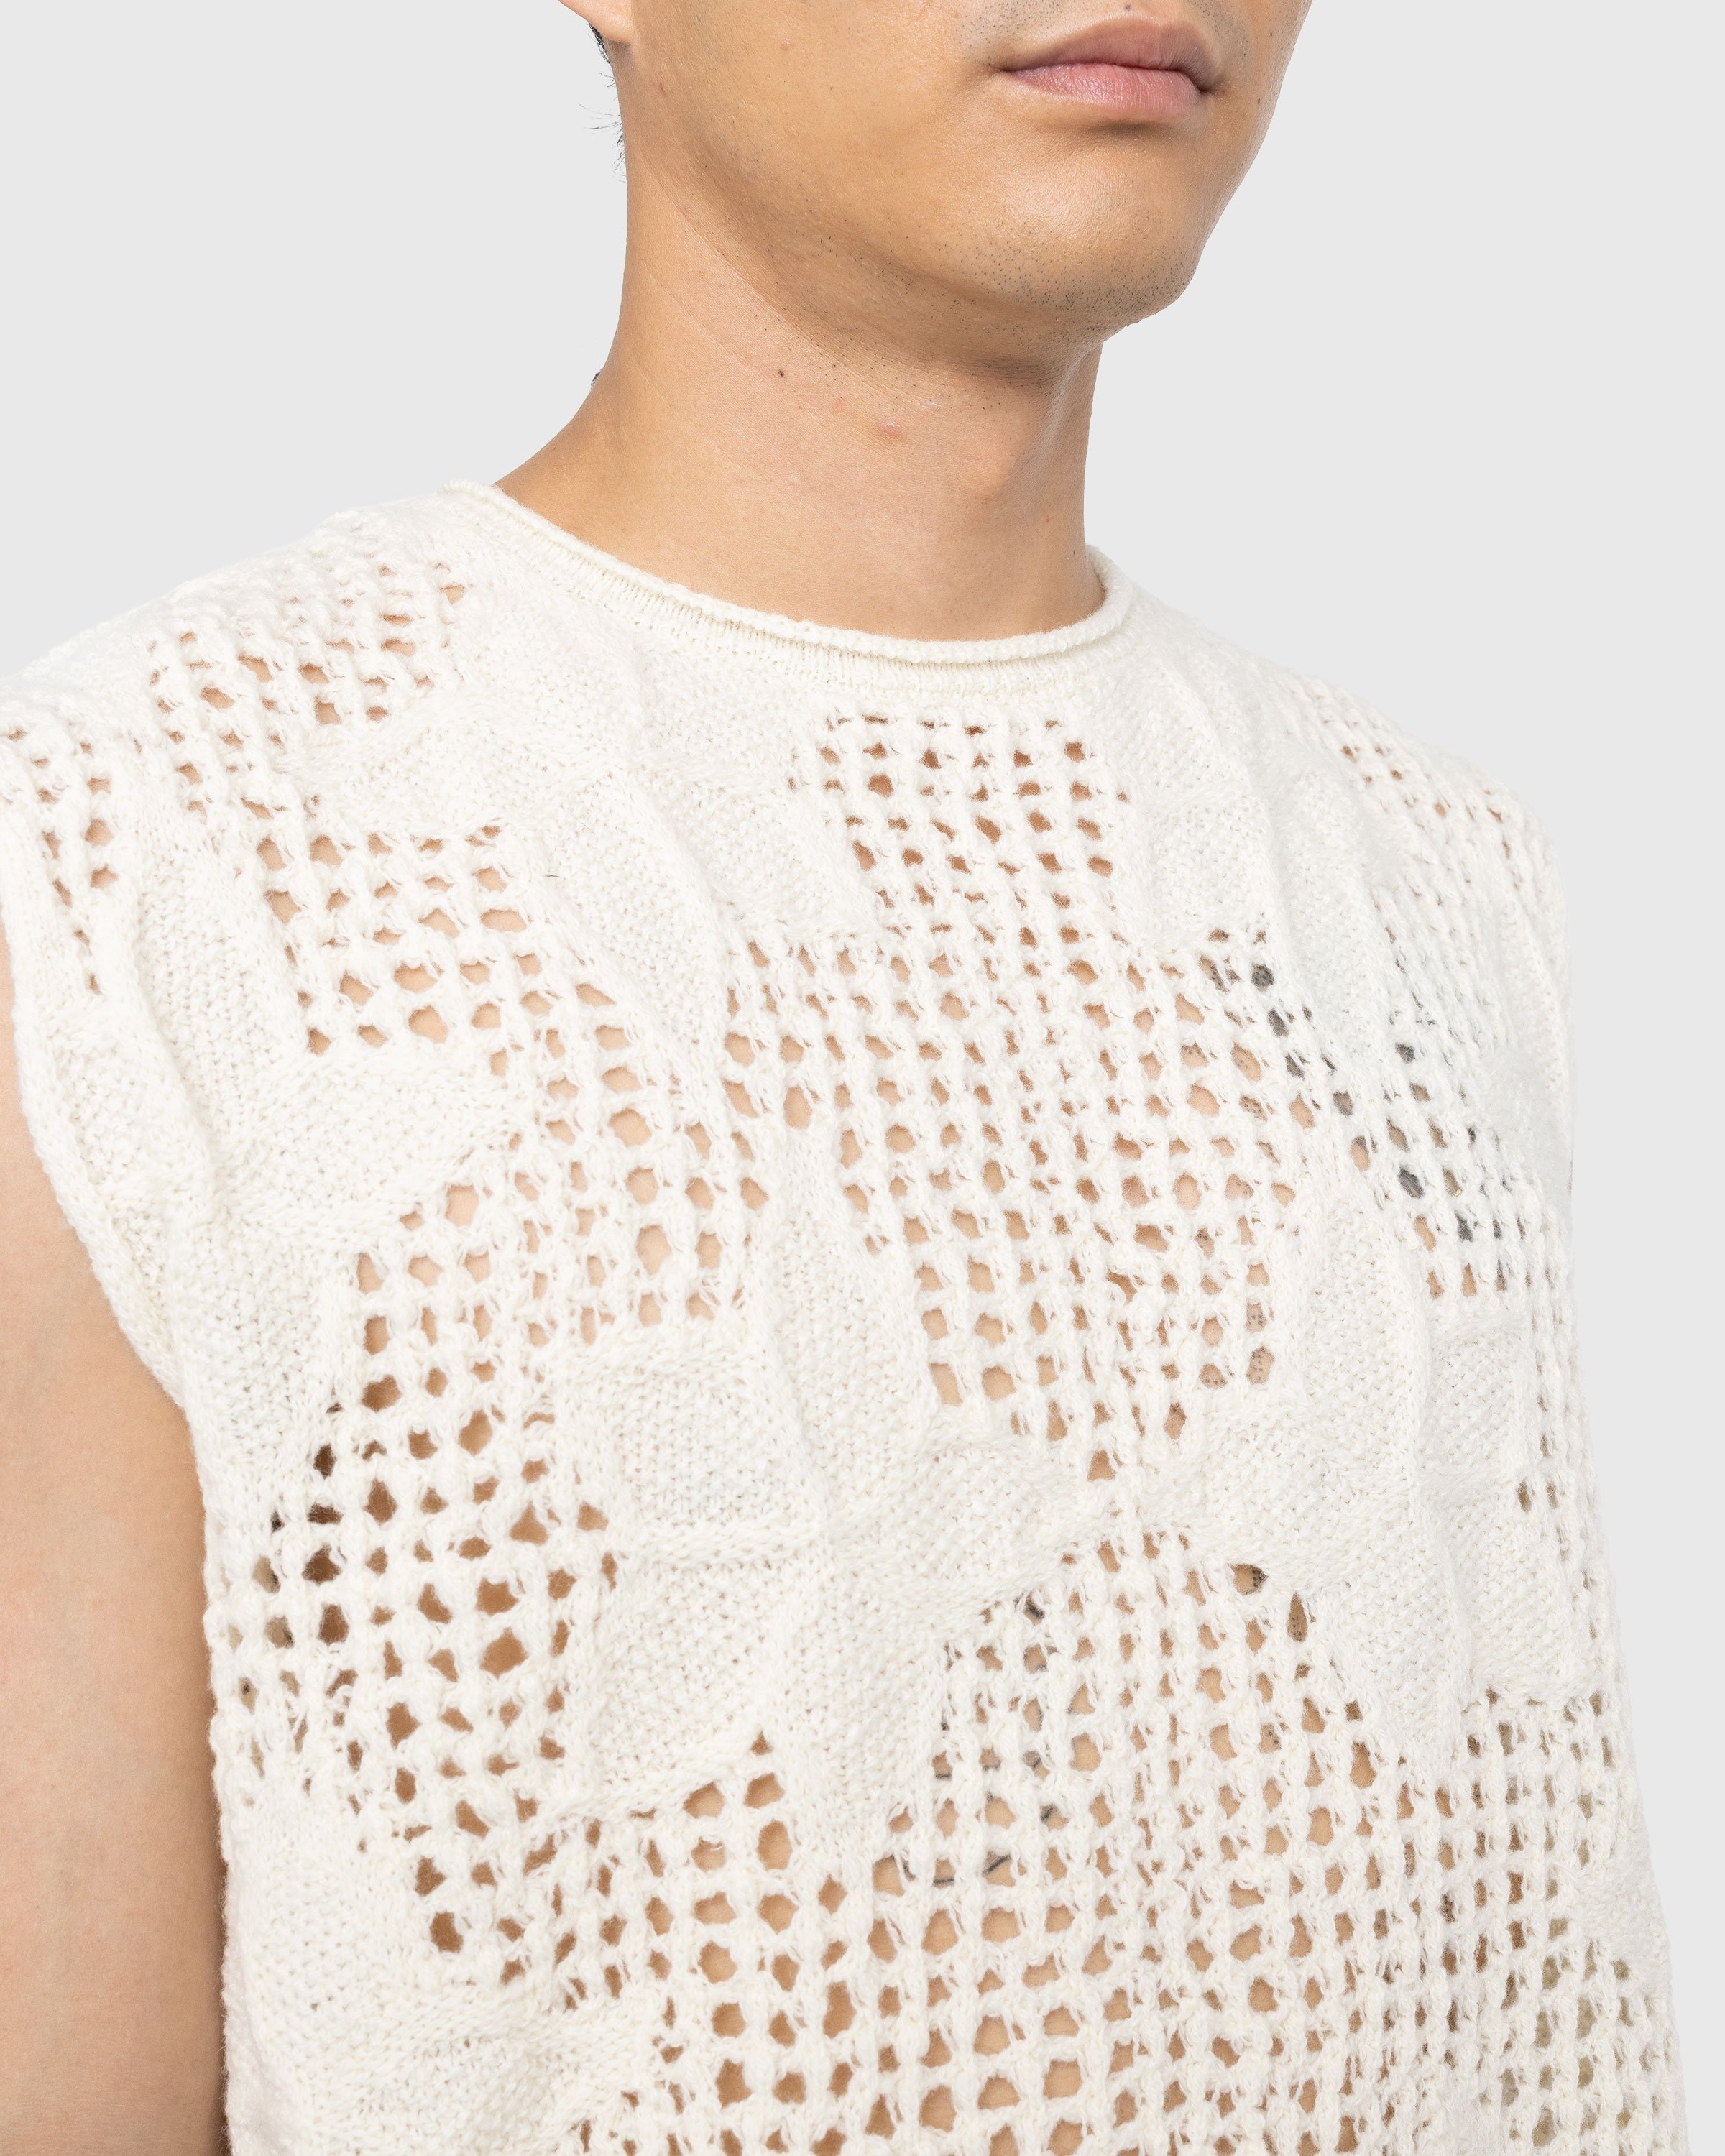 Dries van Noten – Meddo Knit Sweater Vest Ecru - Knitwear - White - Image 4